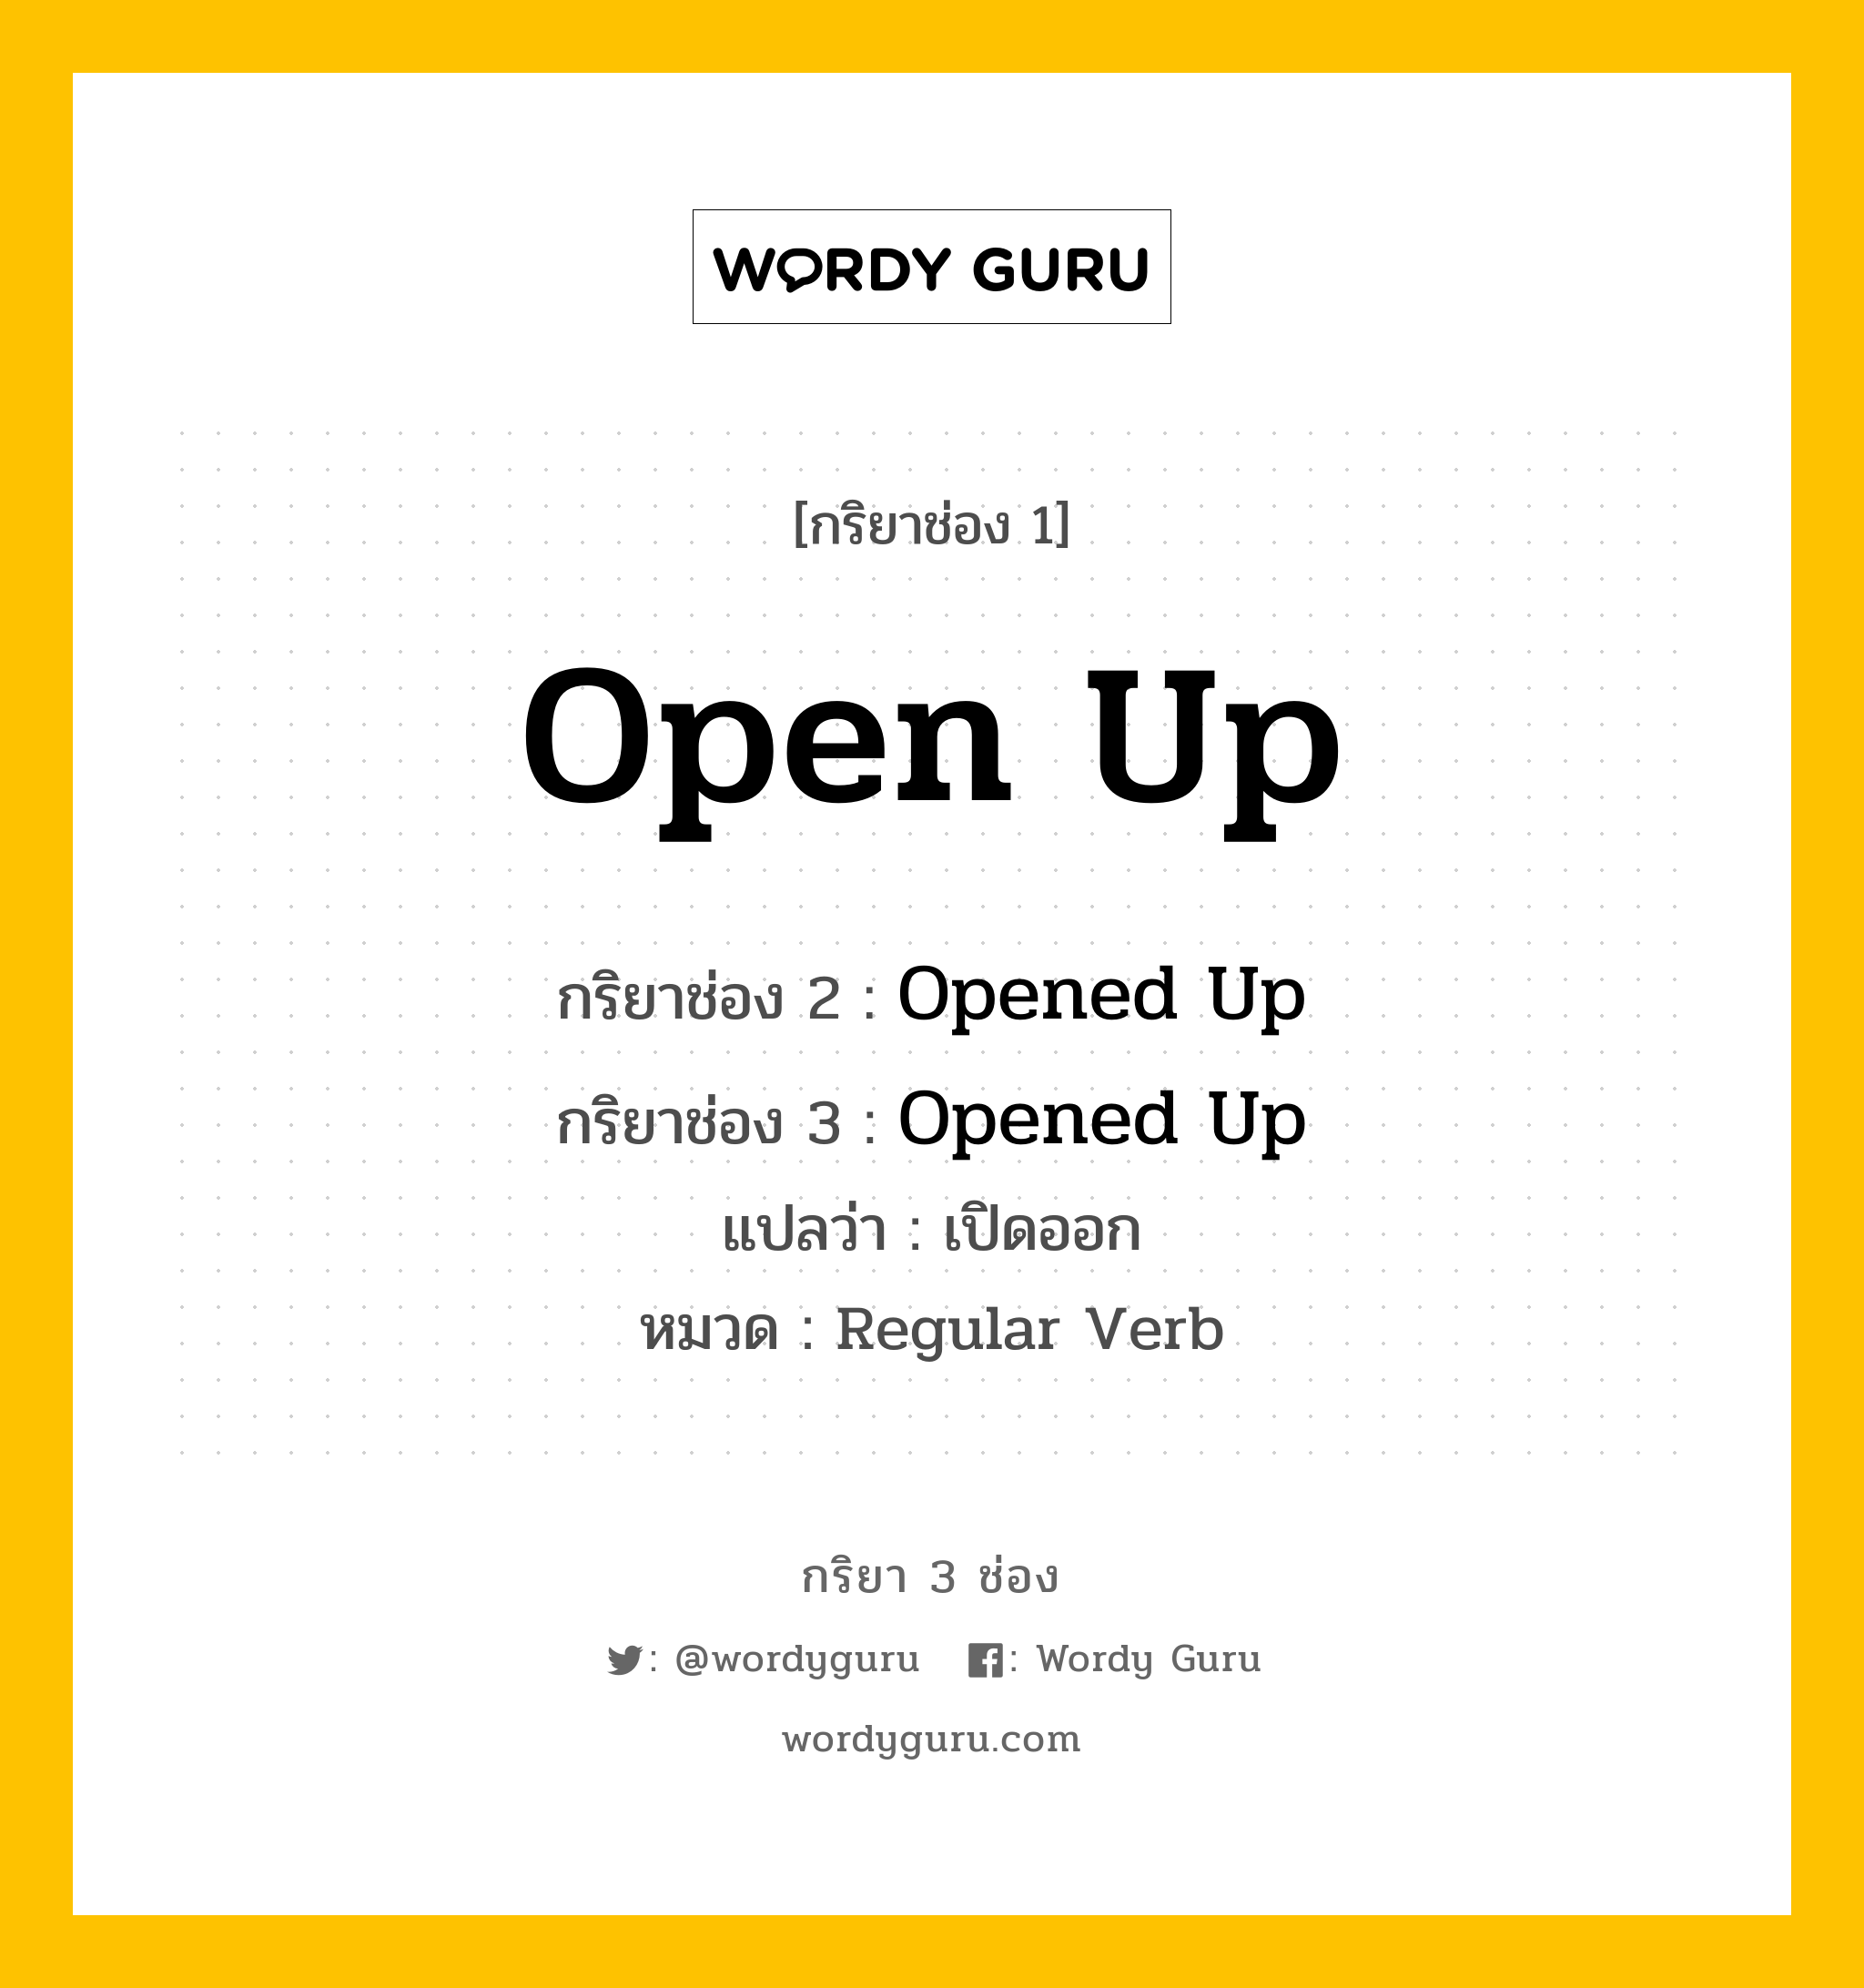 กริยา 3 ช่อง: Open Up ช่อง 2 Open Up ช่อง 3 คืออะไร, กริยาช่อง 1 Open Up กริยาช่อง 2 Opened Up กริยาช่อง 3 Opened Up แปลว่า เปิดออก หมวด Regular Verb หมวด Regular Verb